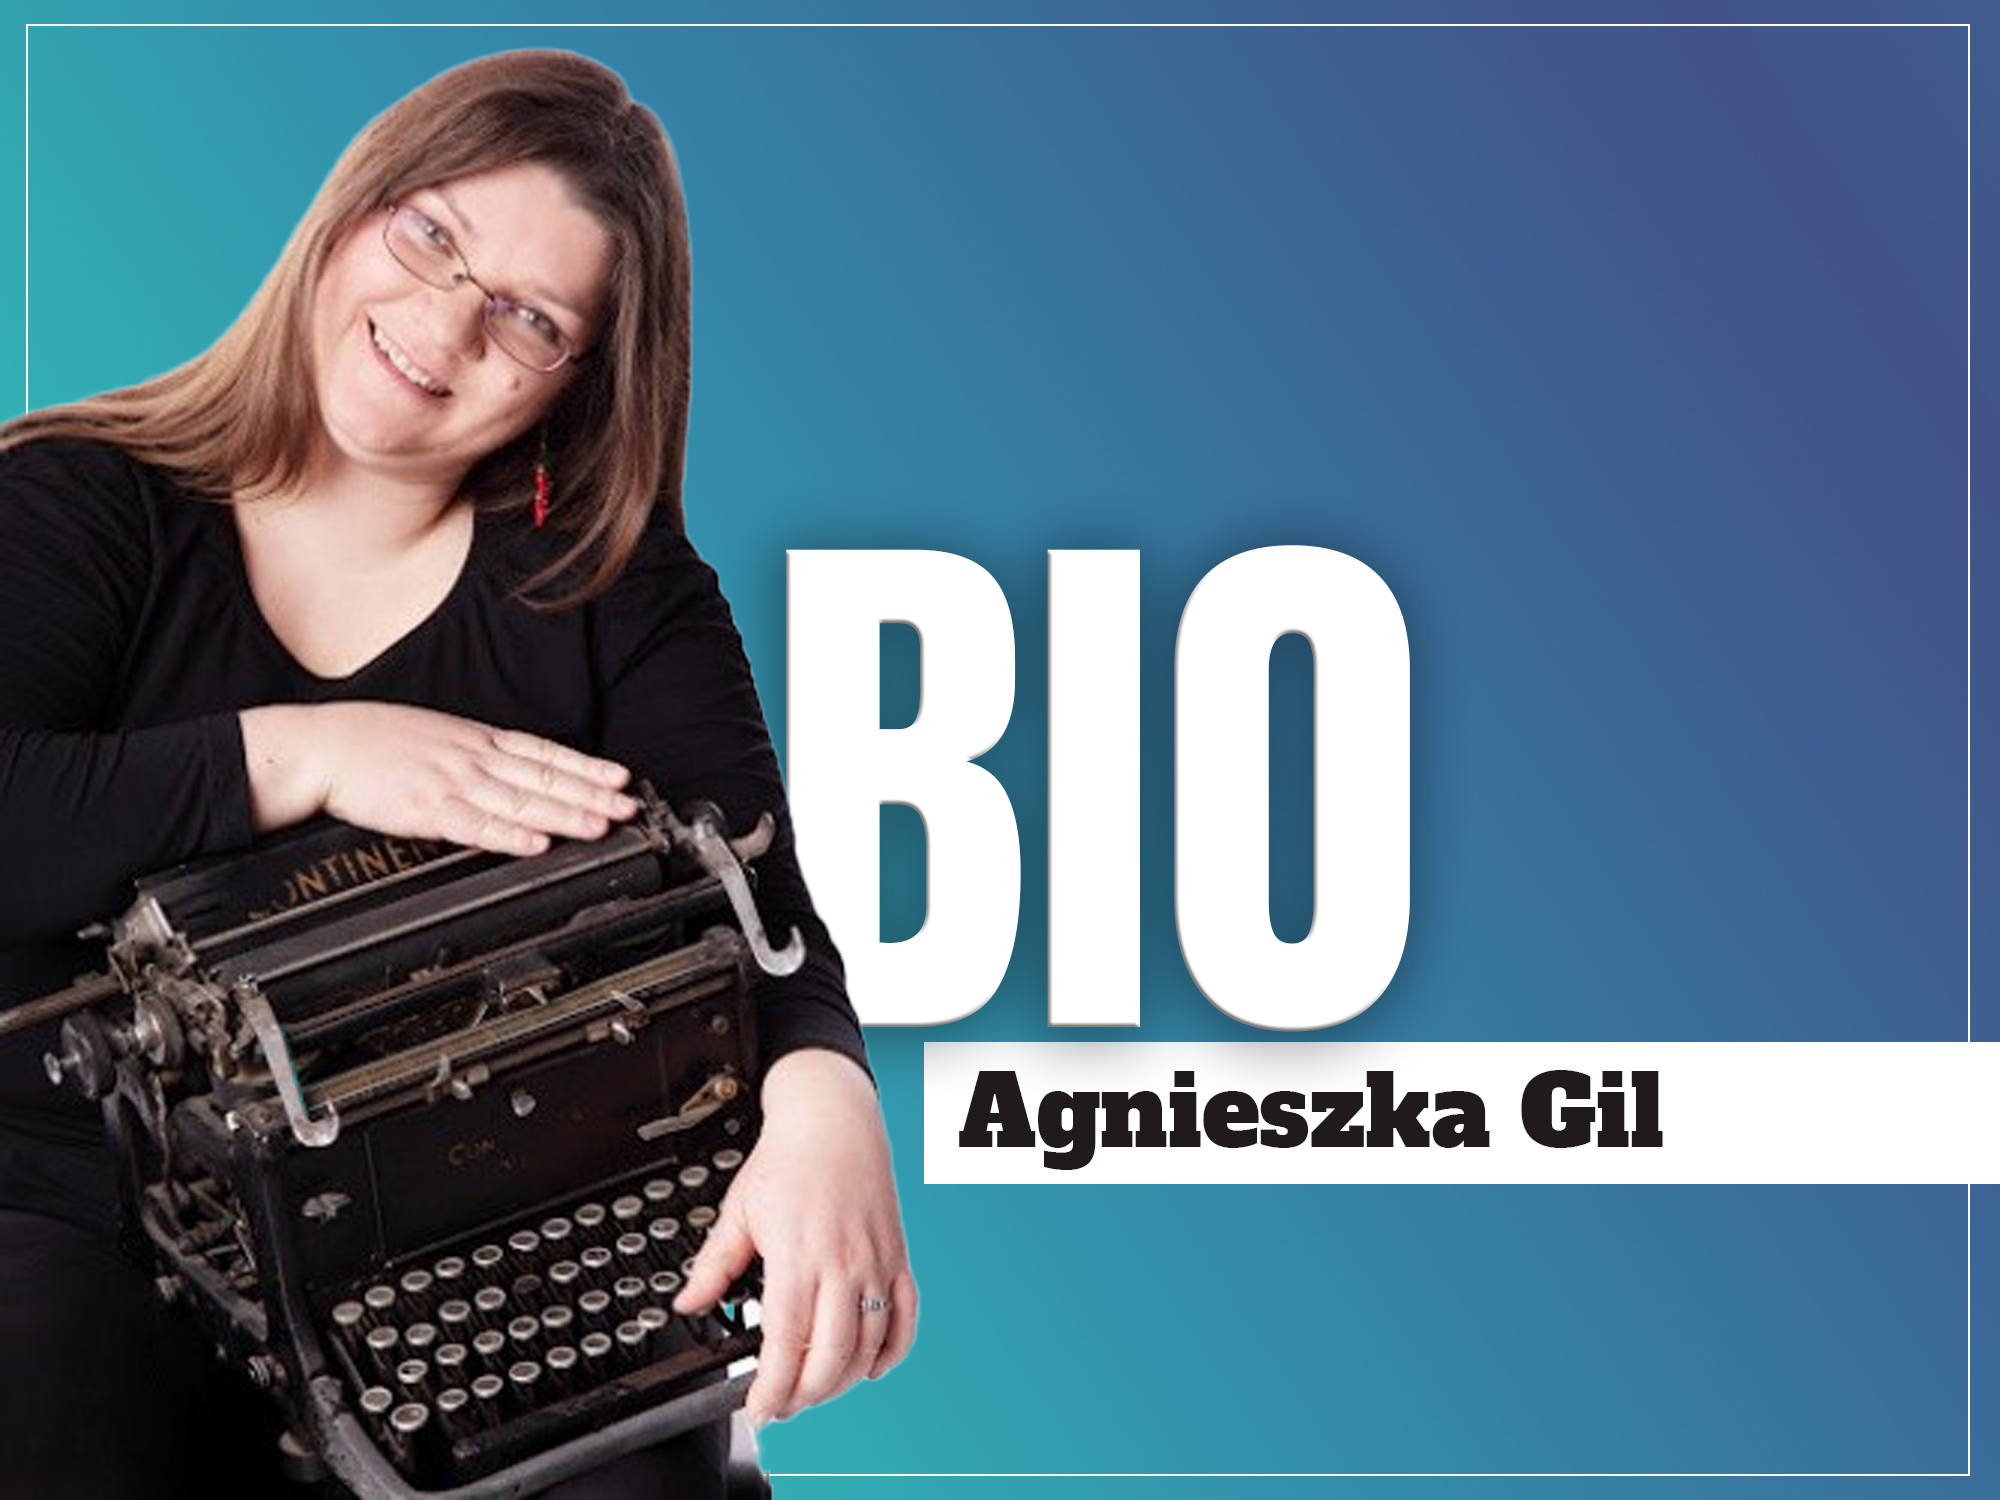 Agnieszka Gil